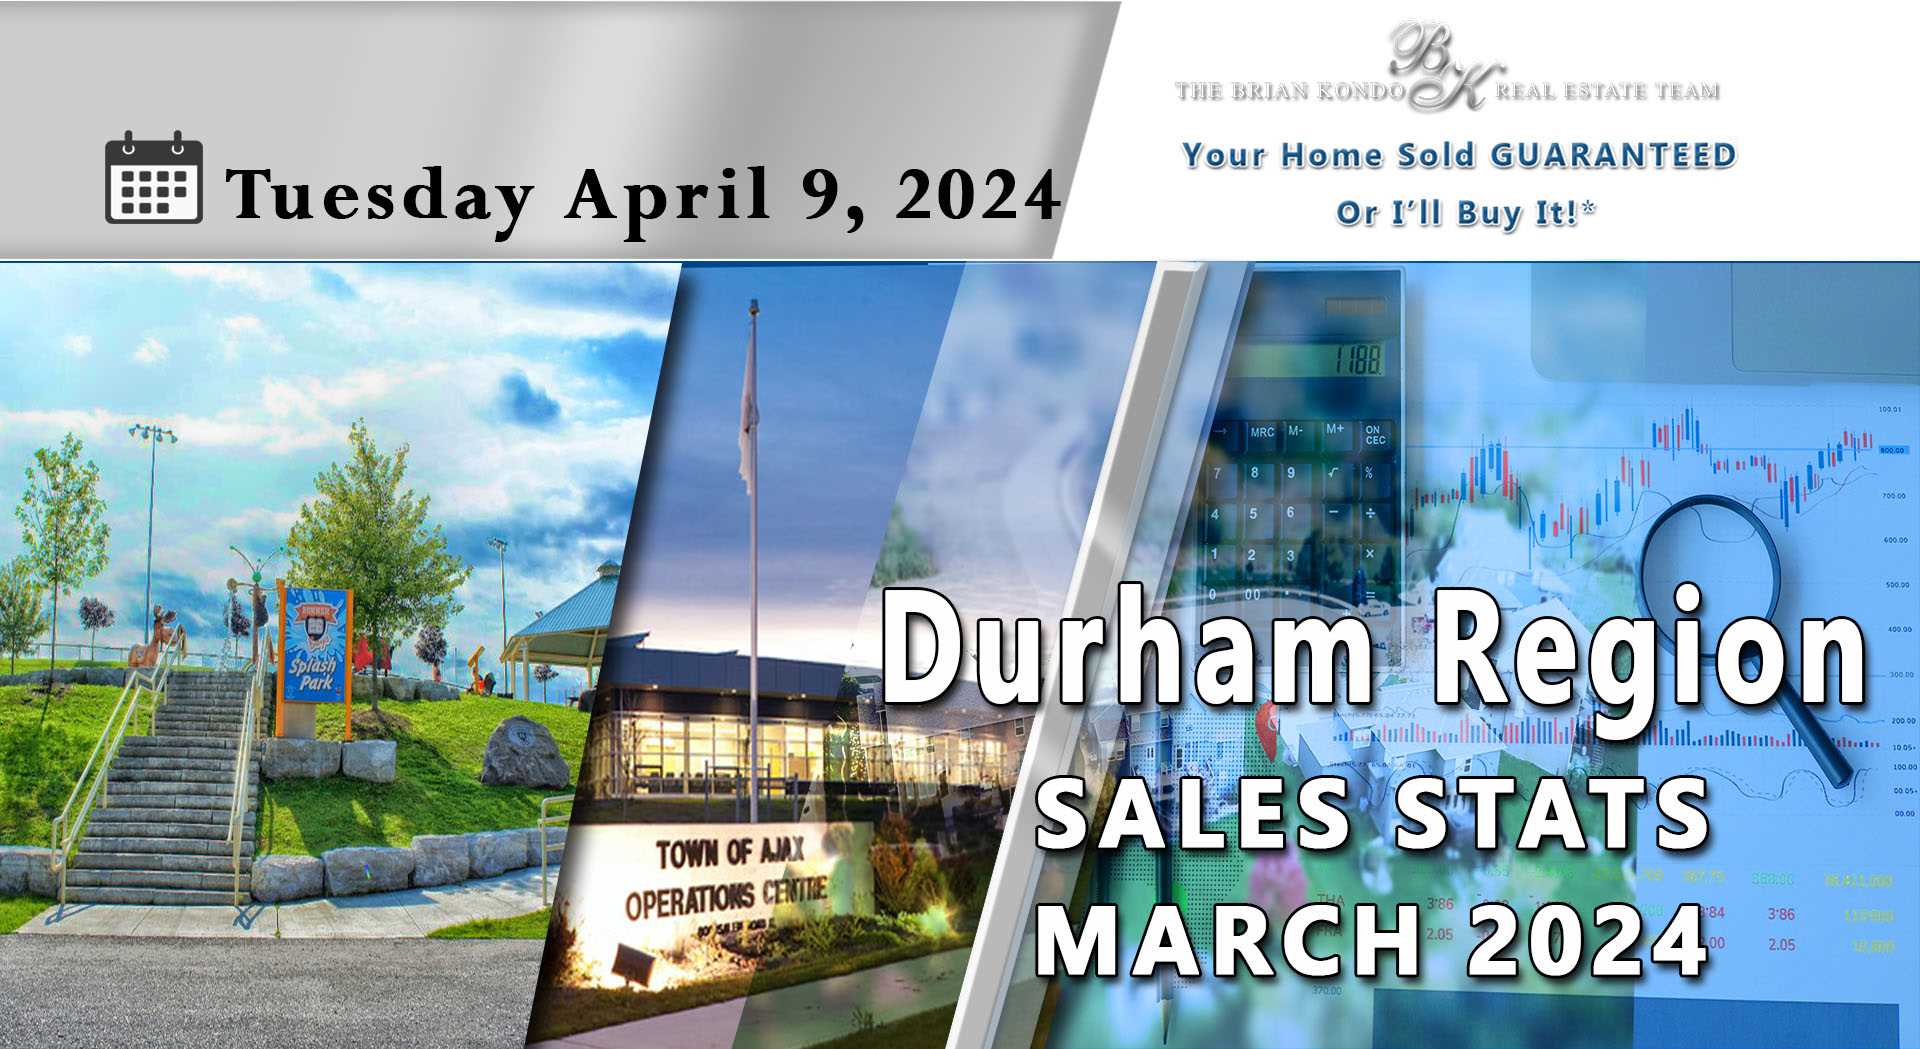 DURHAM REGION SALES STATS MARCH 2024